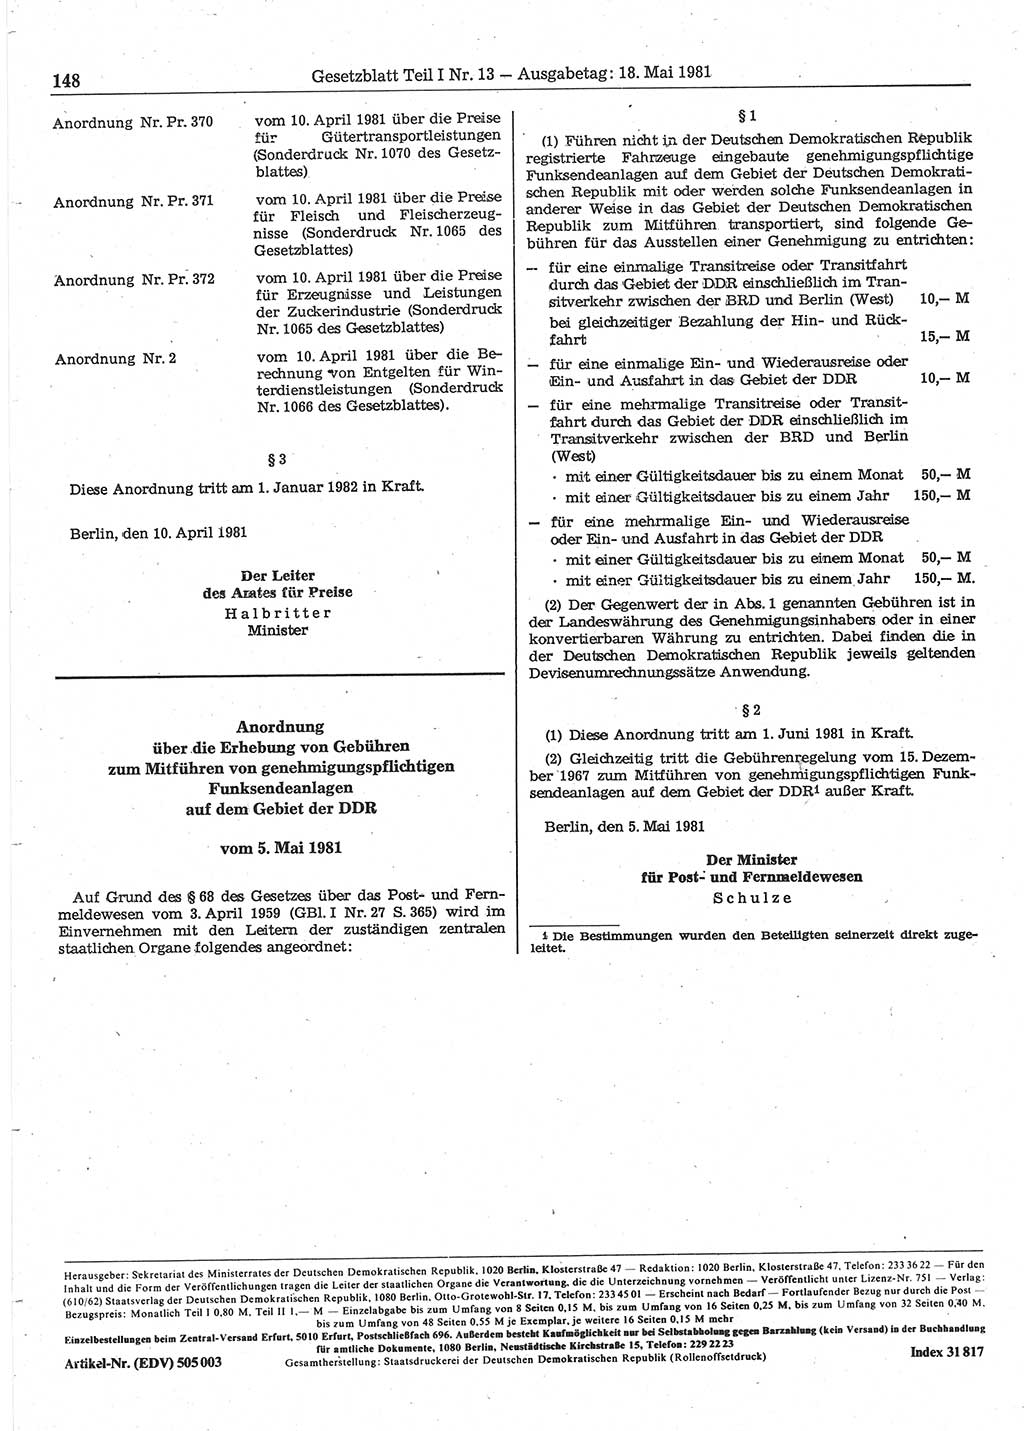 Gesetzblatt (GBl.) der Deutschen Demokratischen Republik (DDR) Teil Ⅰ 1981, Seite 148 (GBl. DDR Ⅰ 1981, S. 148)